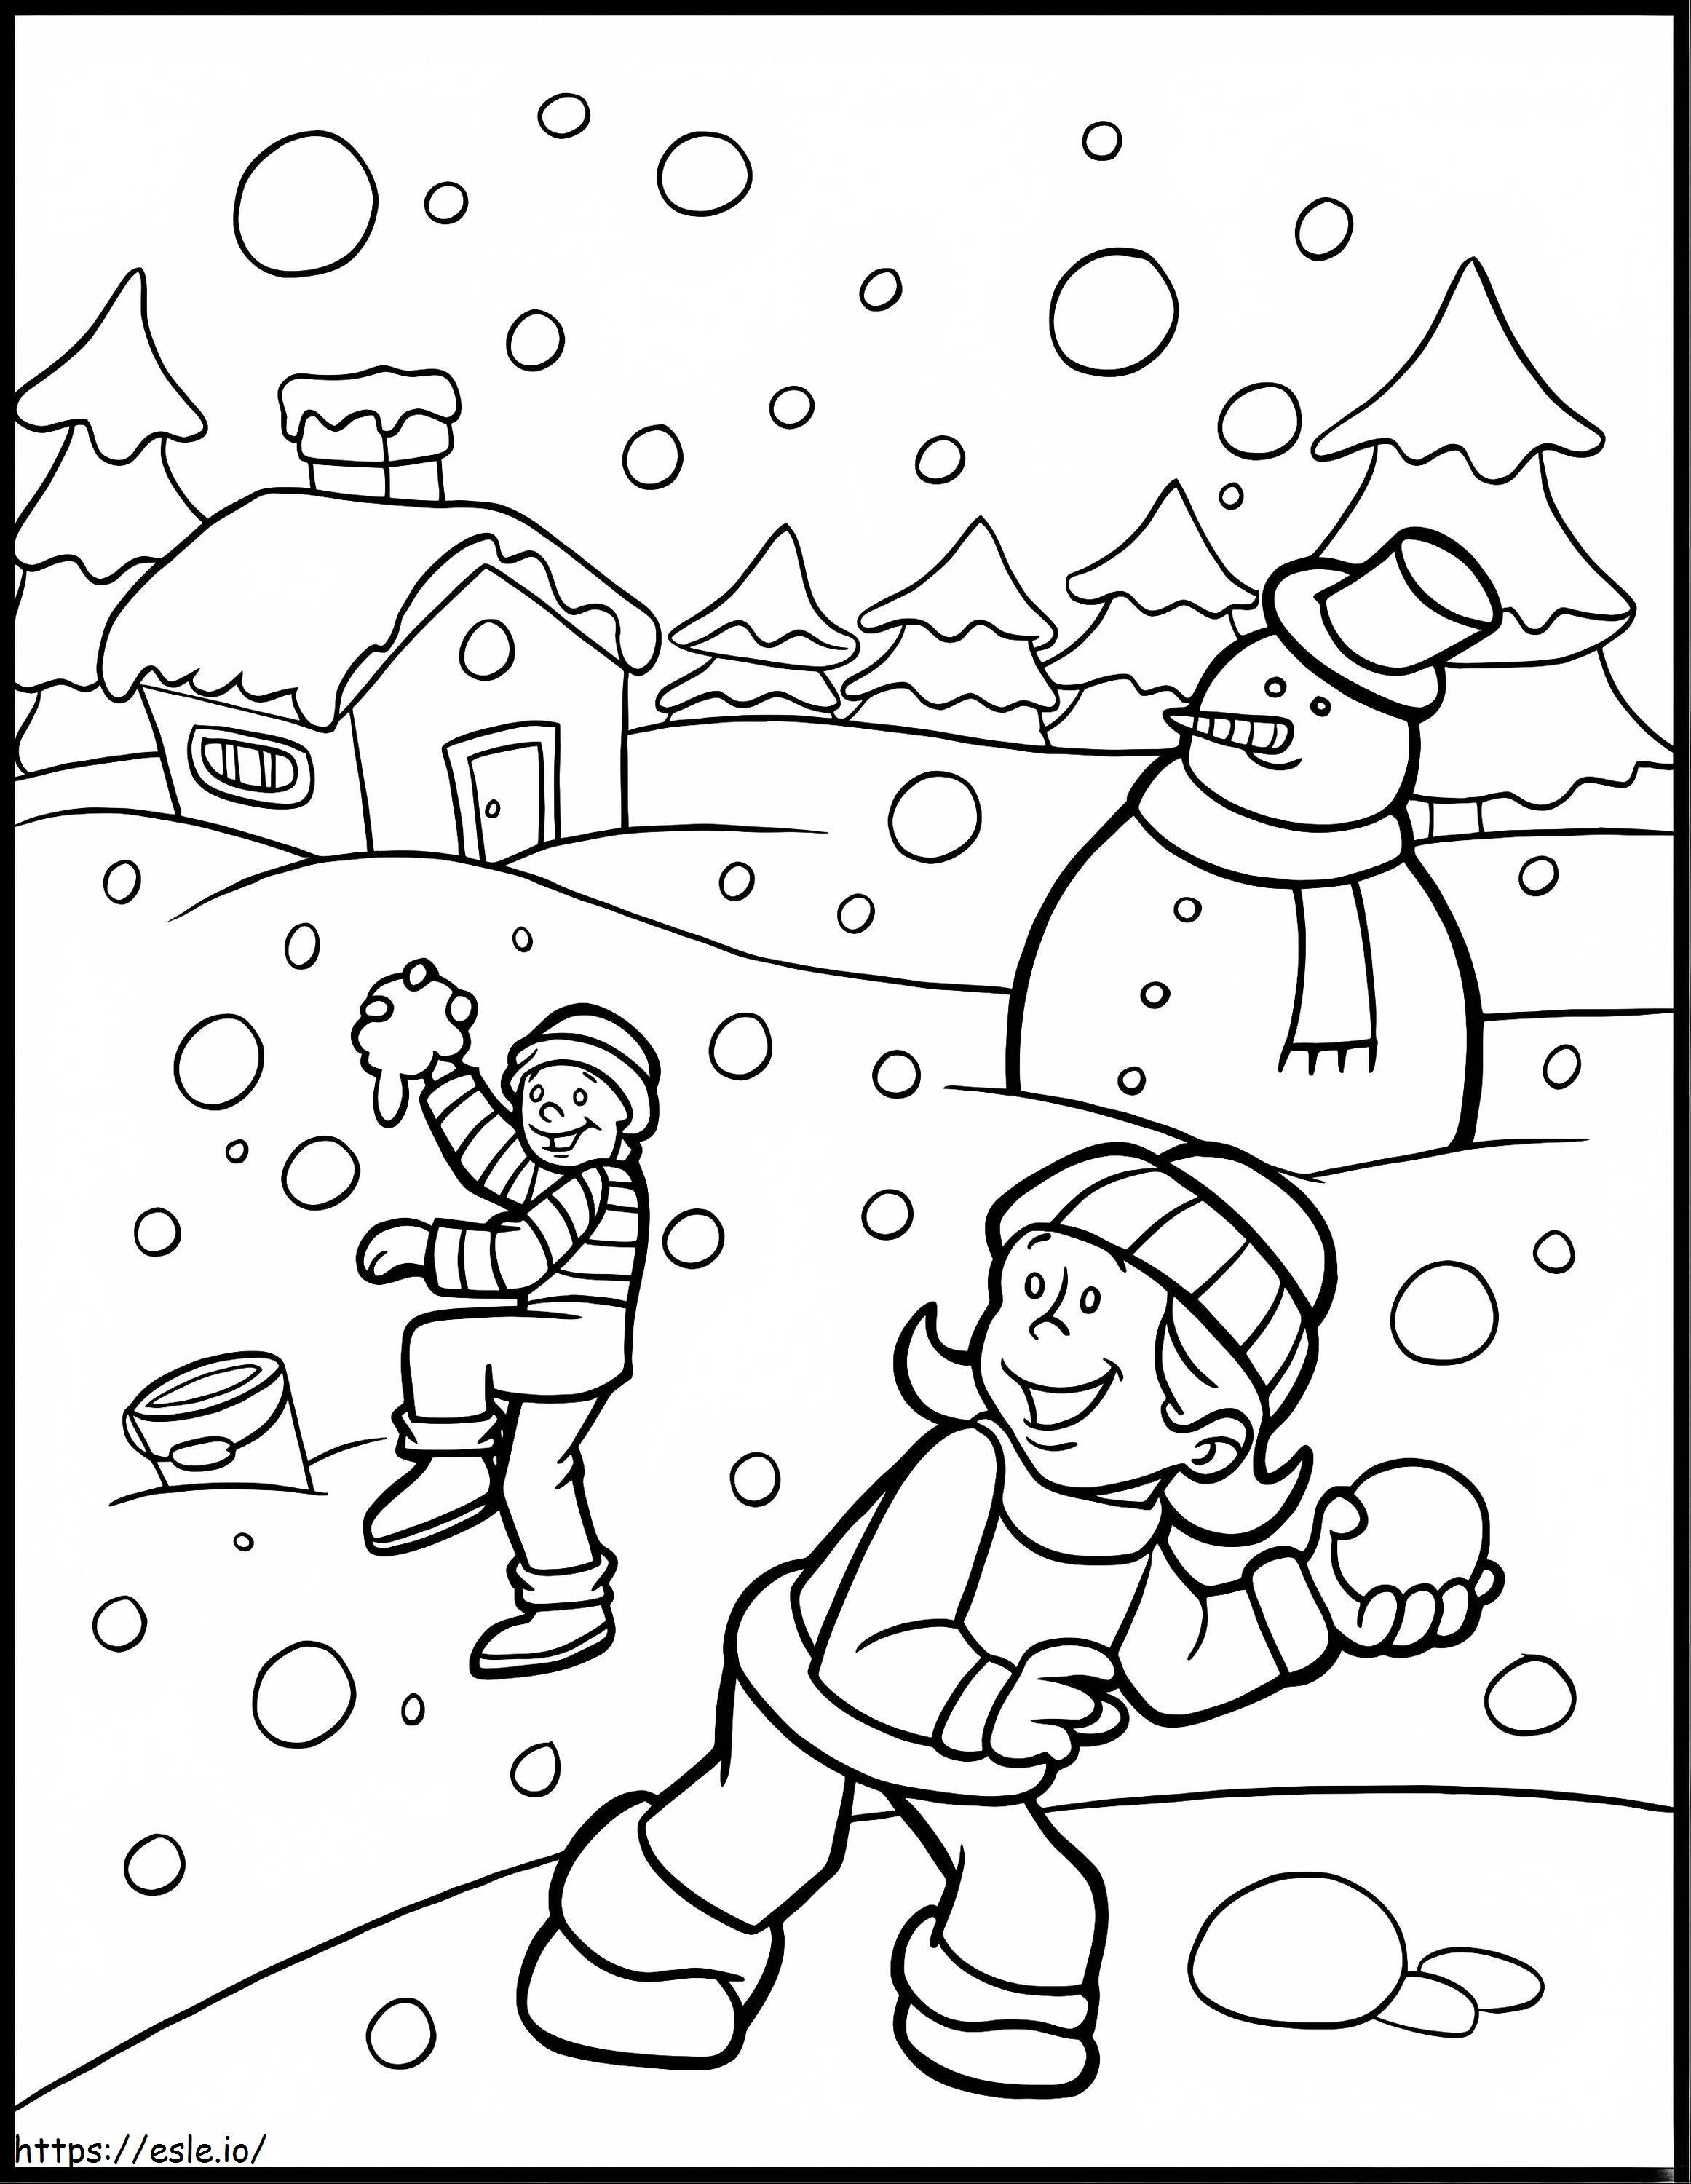 Dos niños y muñeco de nieve en invierno para colorear